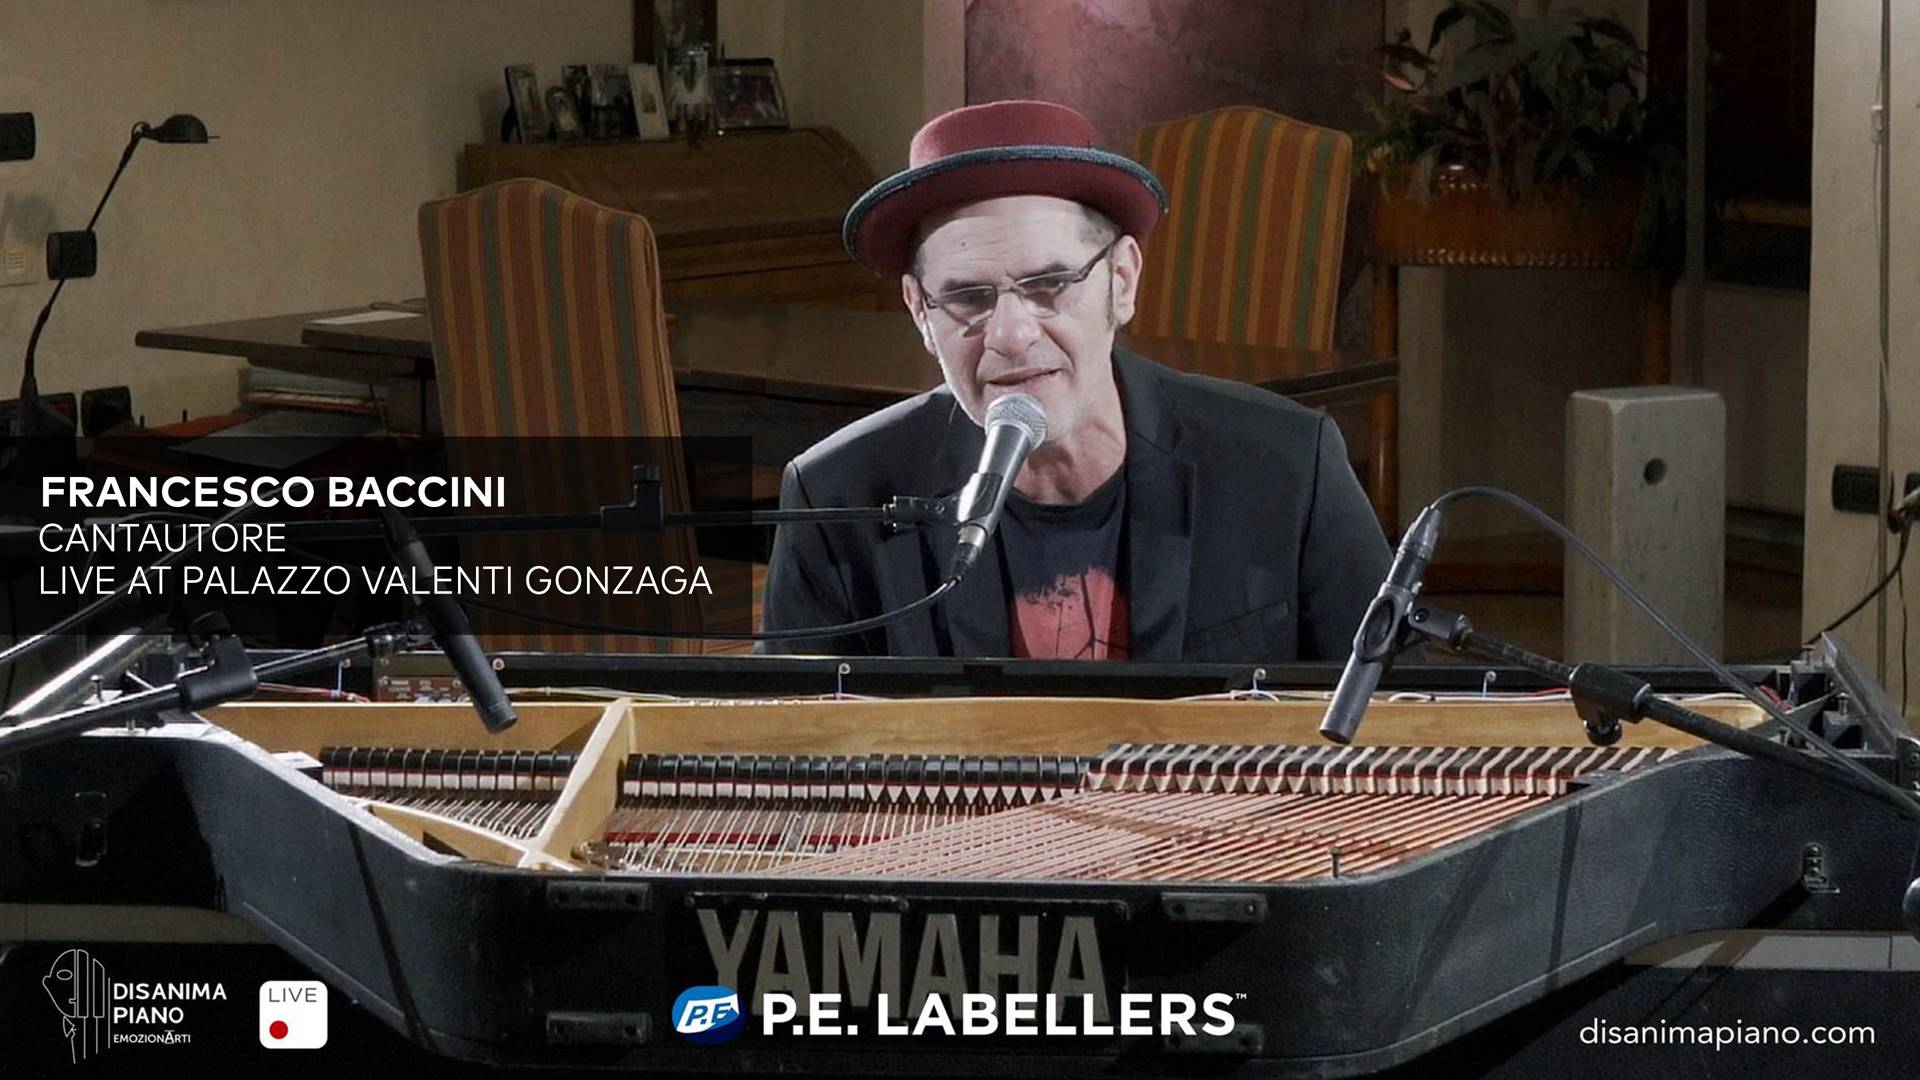 Disanima Piano<br> Francesco Baccini Live at Palazzo Valenti Gonzaga